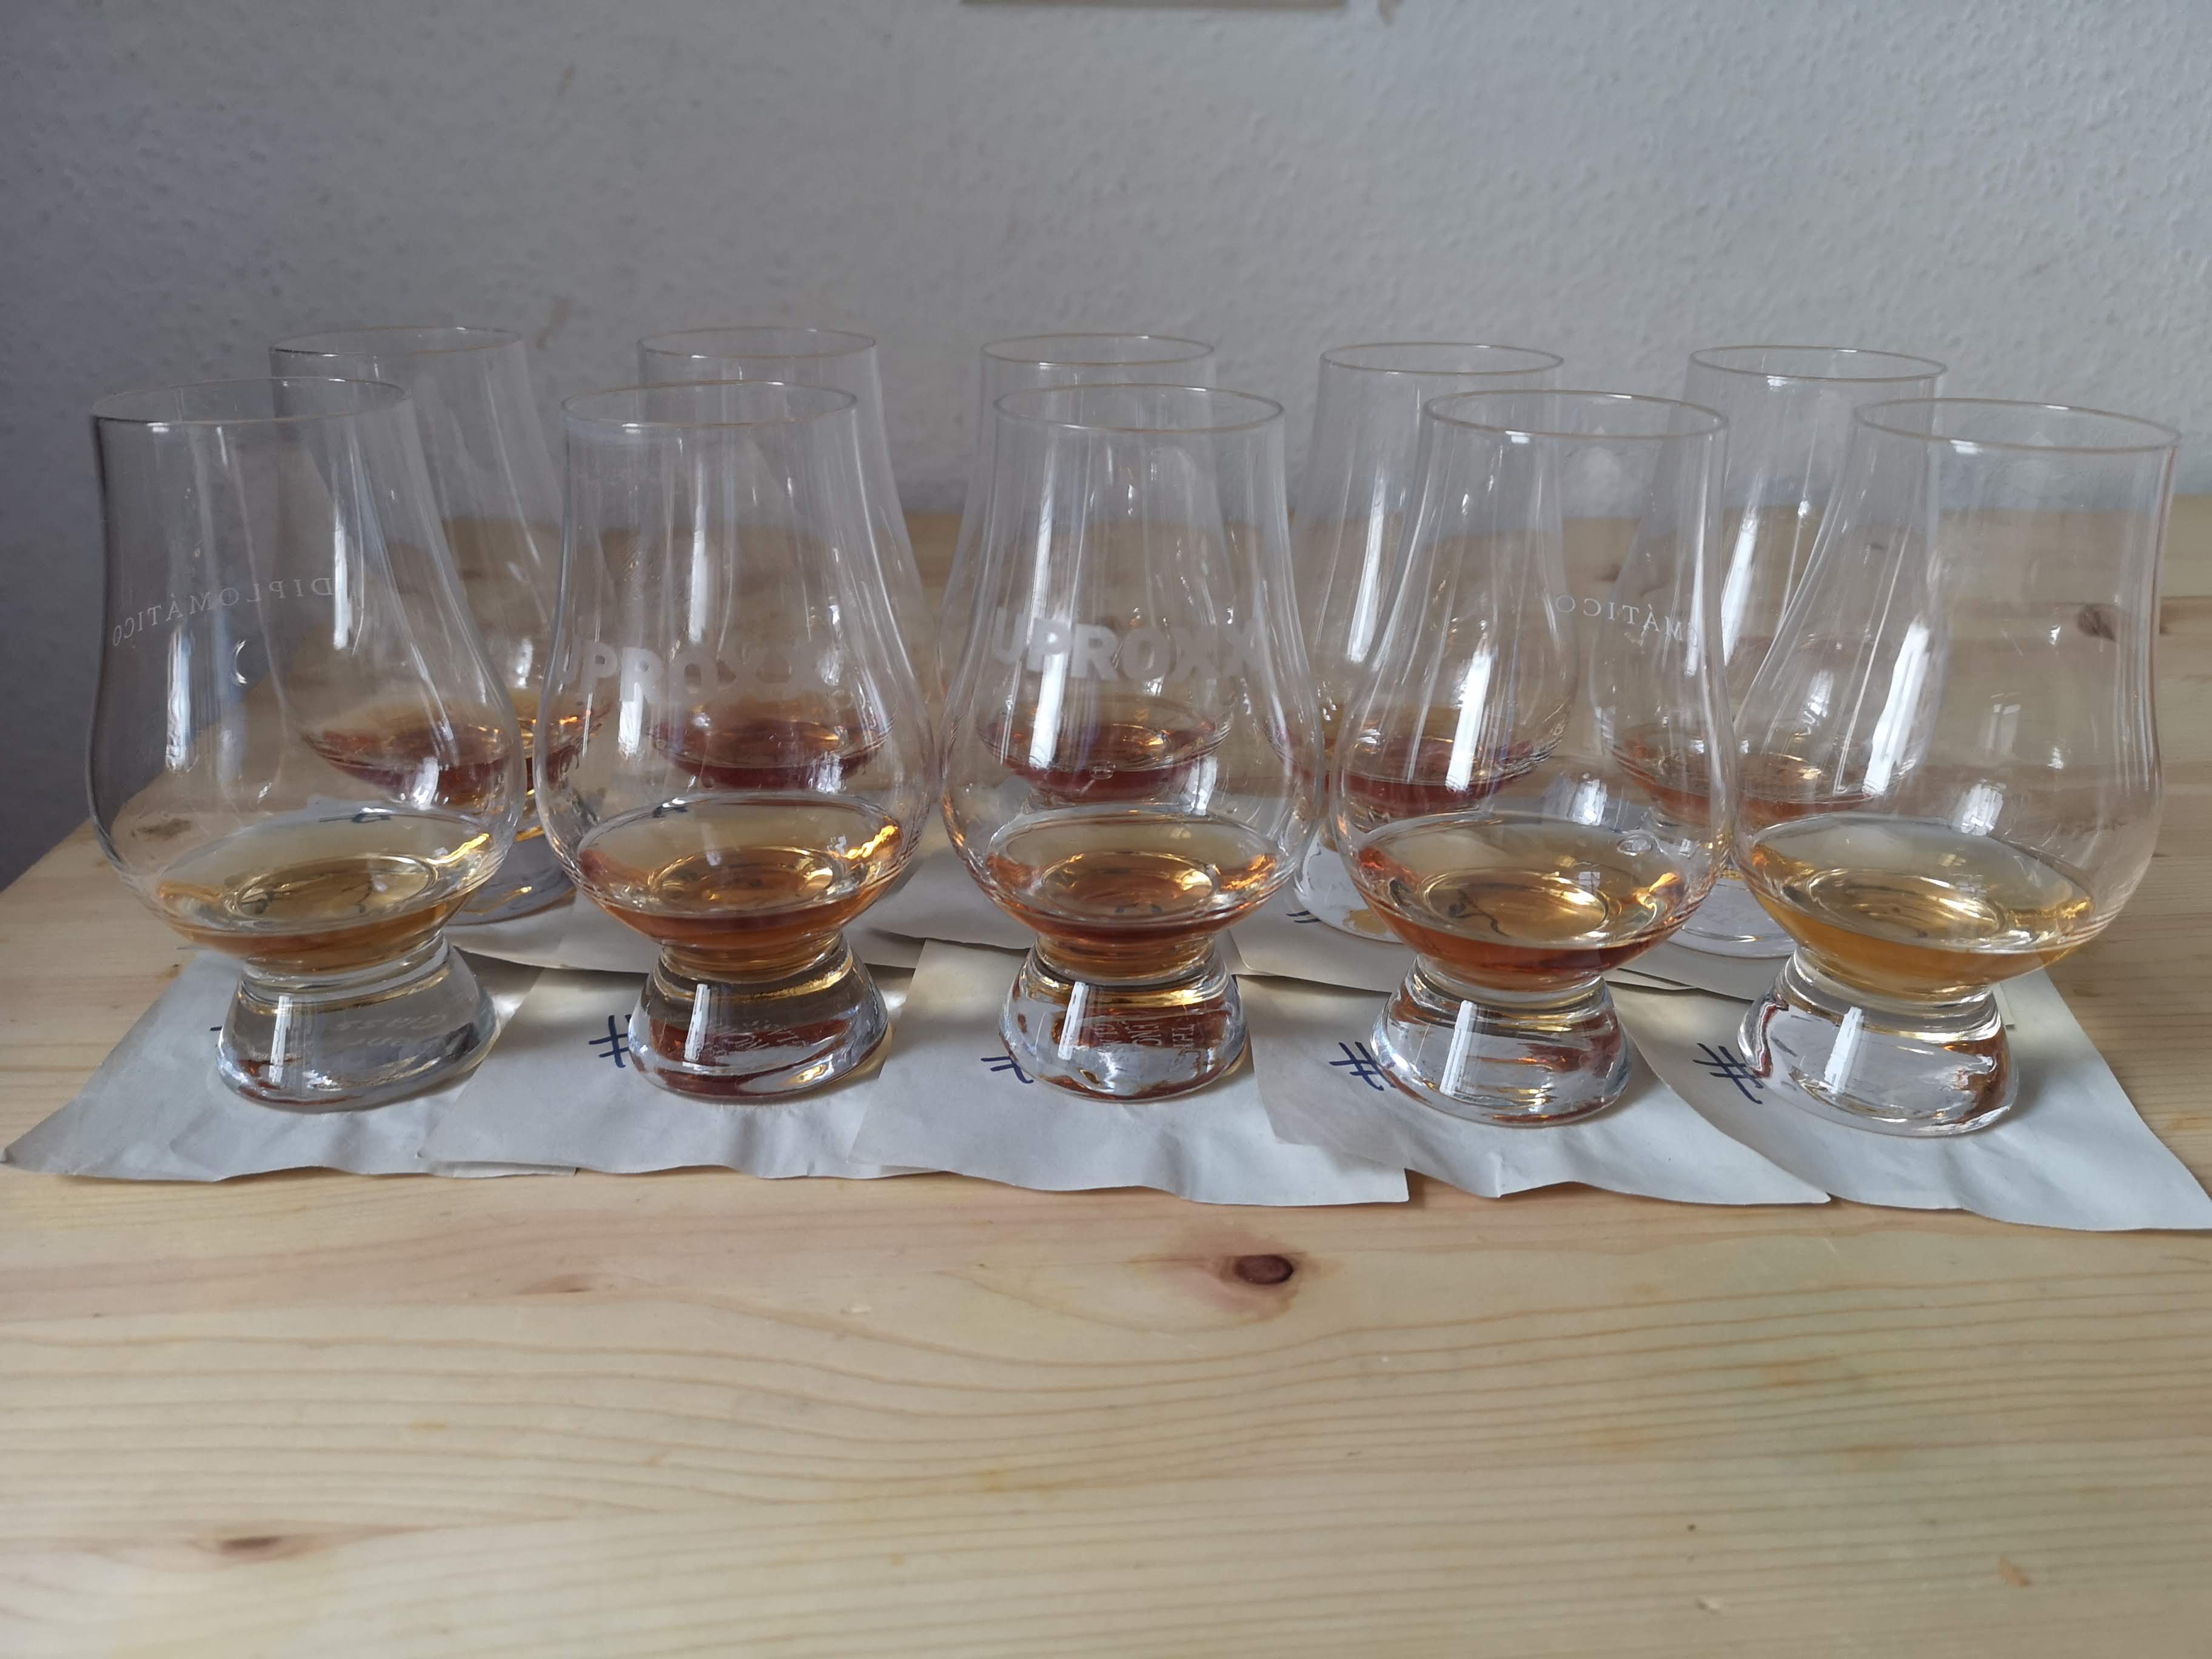 New Bourbon Blind Taste Test